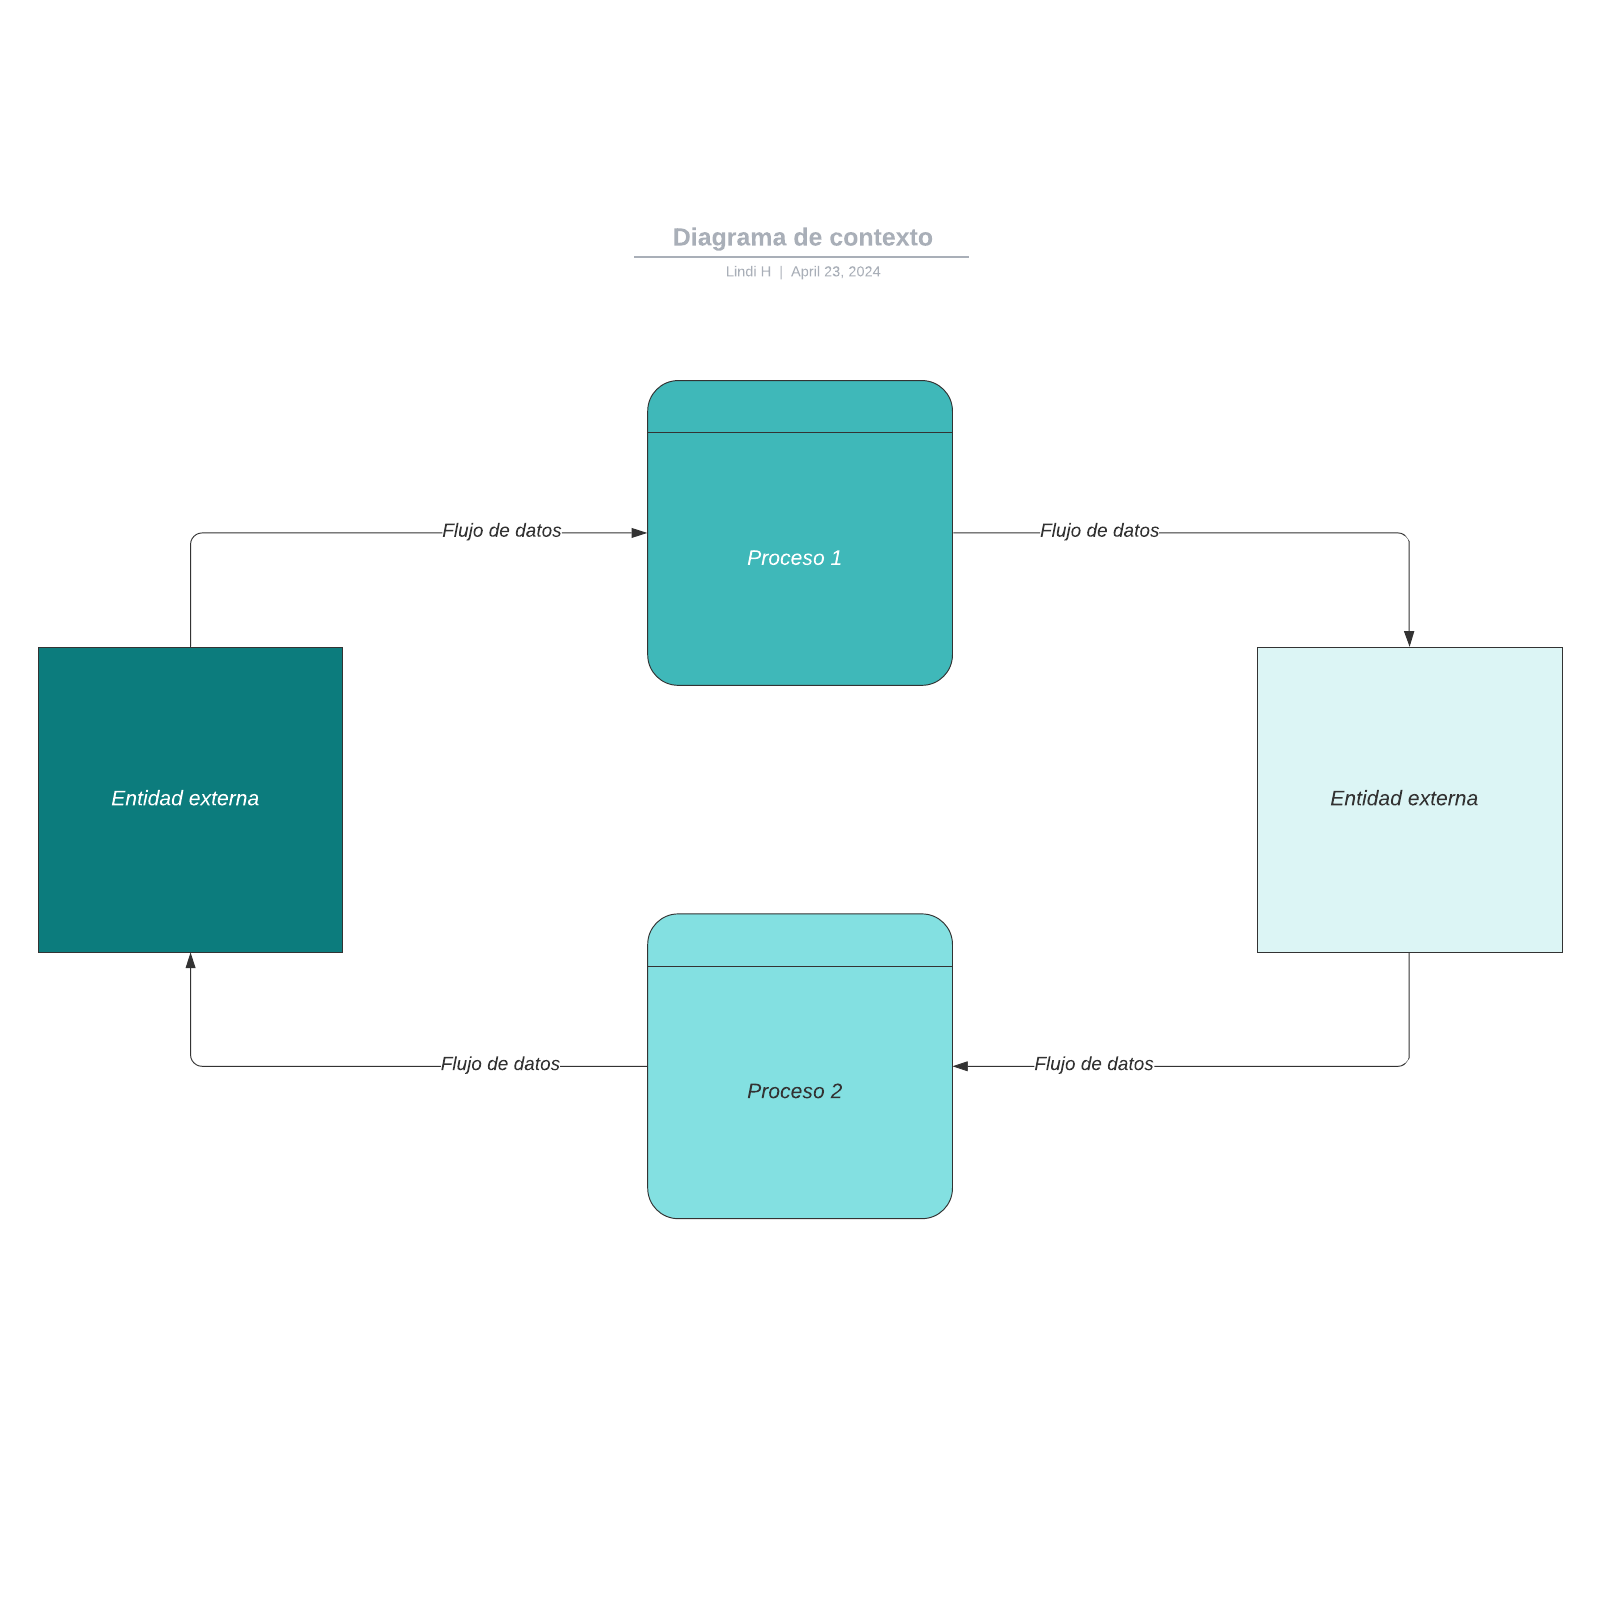 Diagrama de contexto example